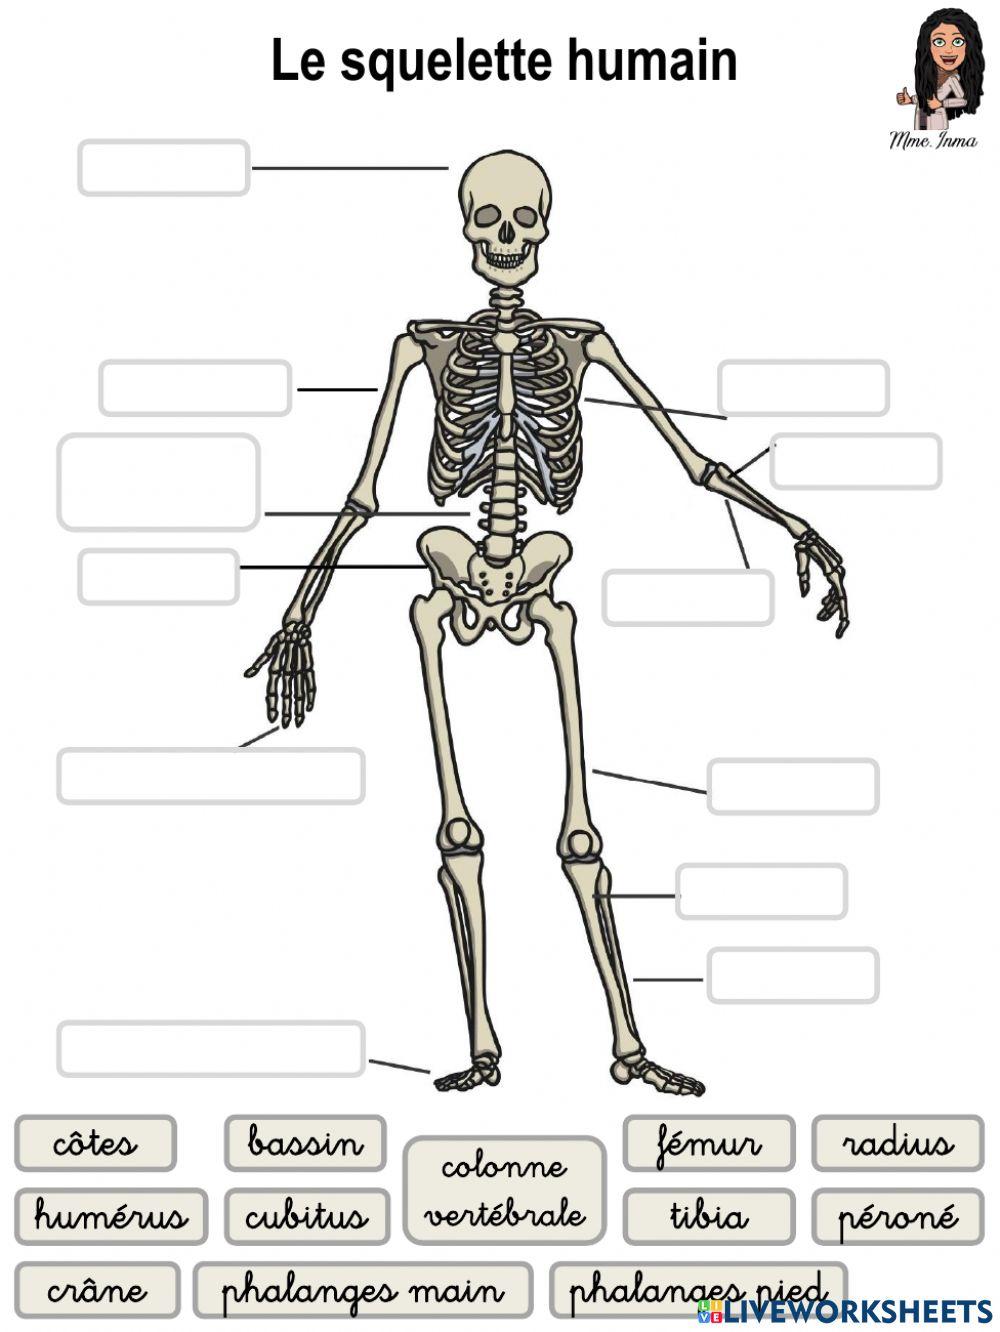 Ficha esqueleto - Fiche squelette